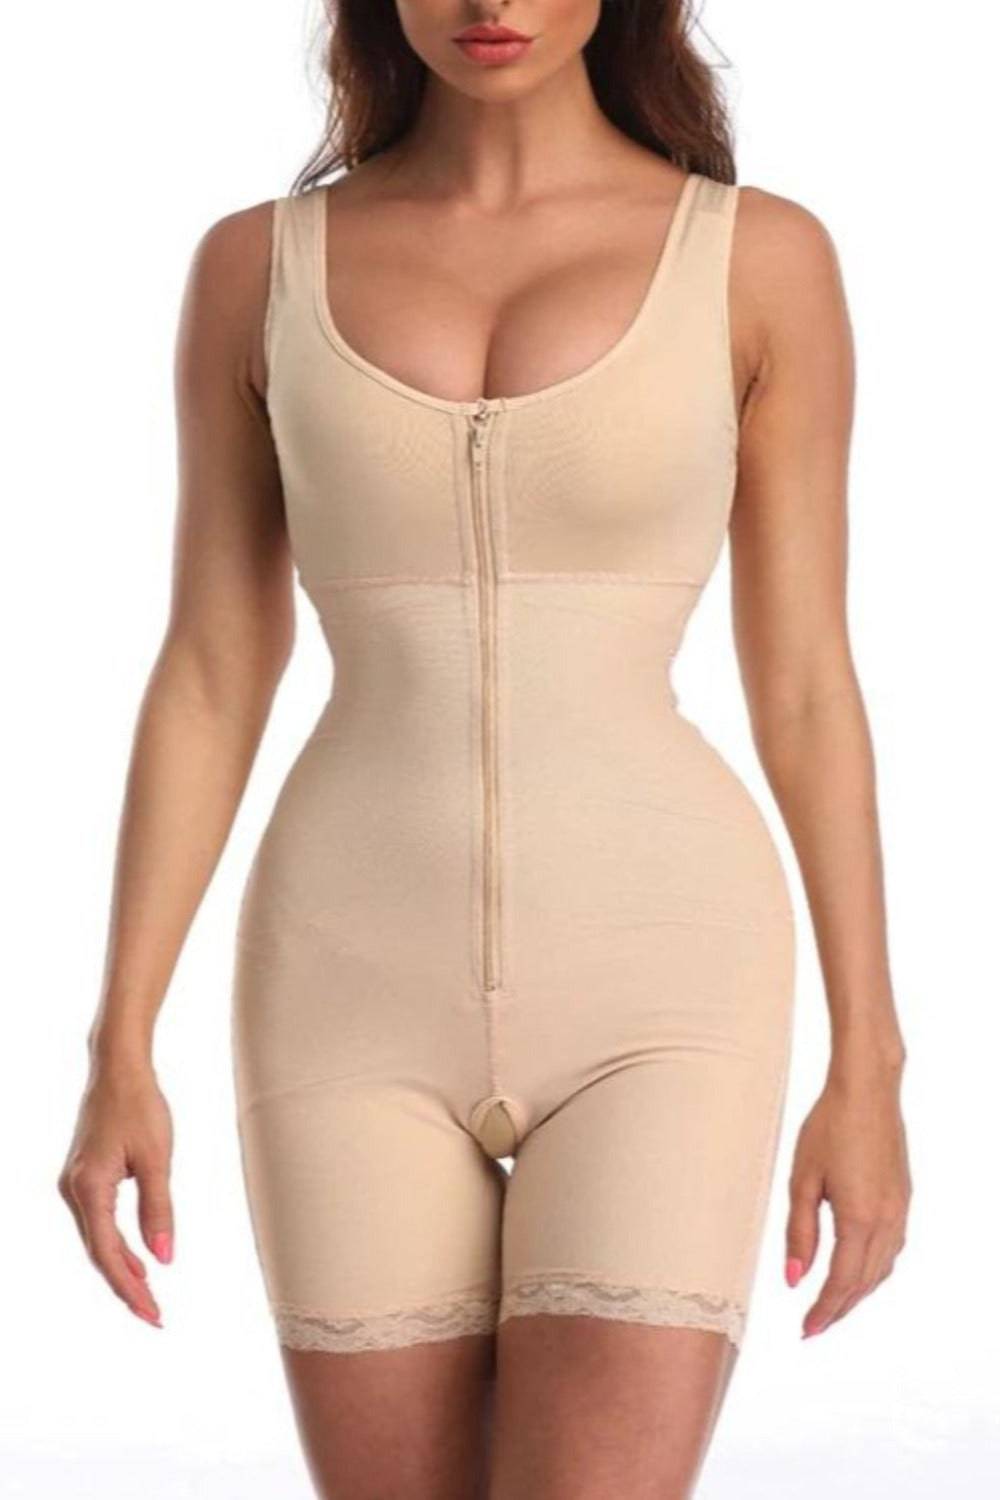 Full Body Open Crotch Tummy Control Bodysuit Shapewear - TGC Boutique - Body Shaper